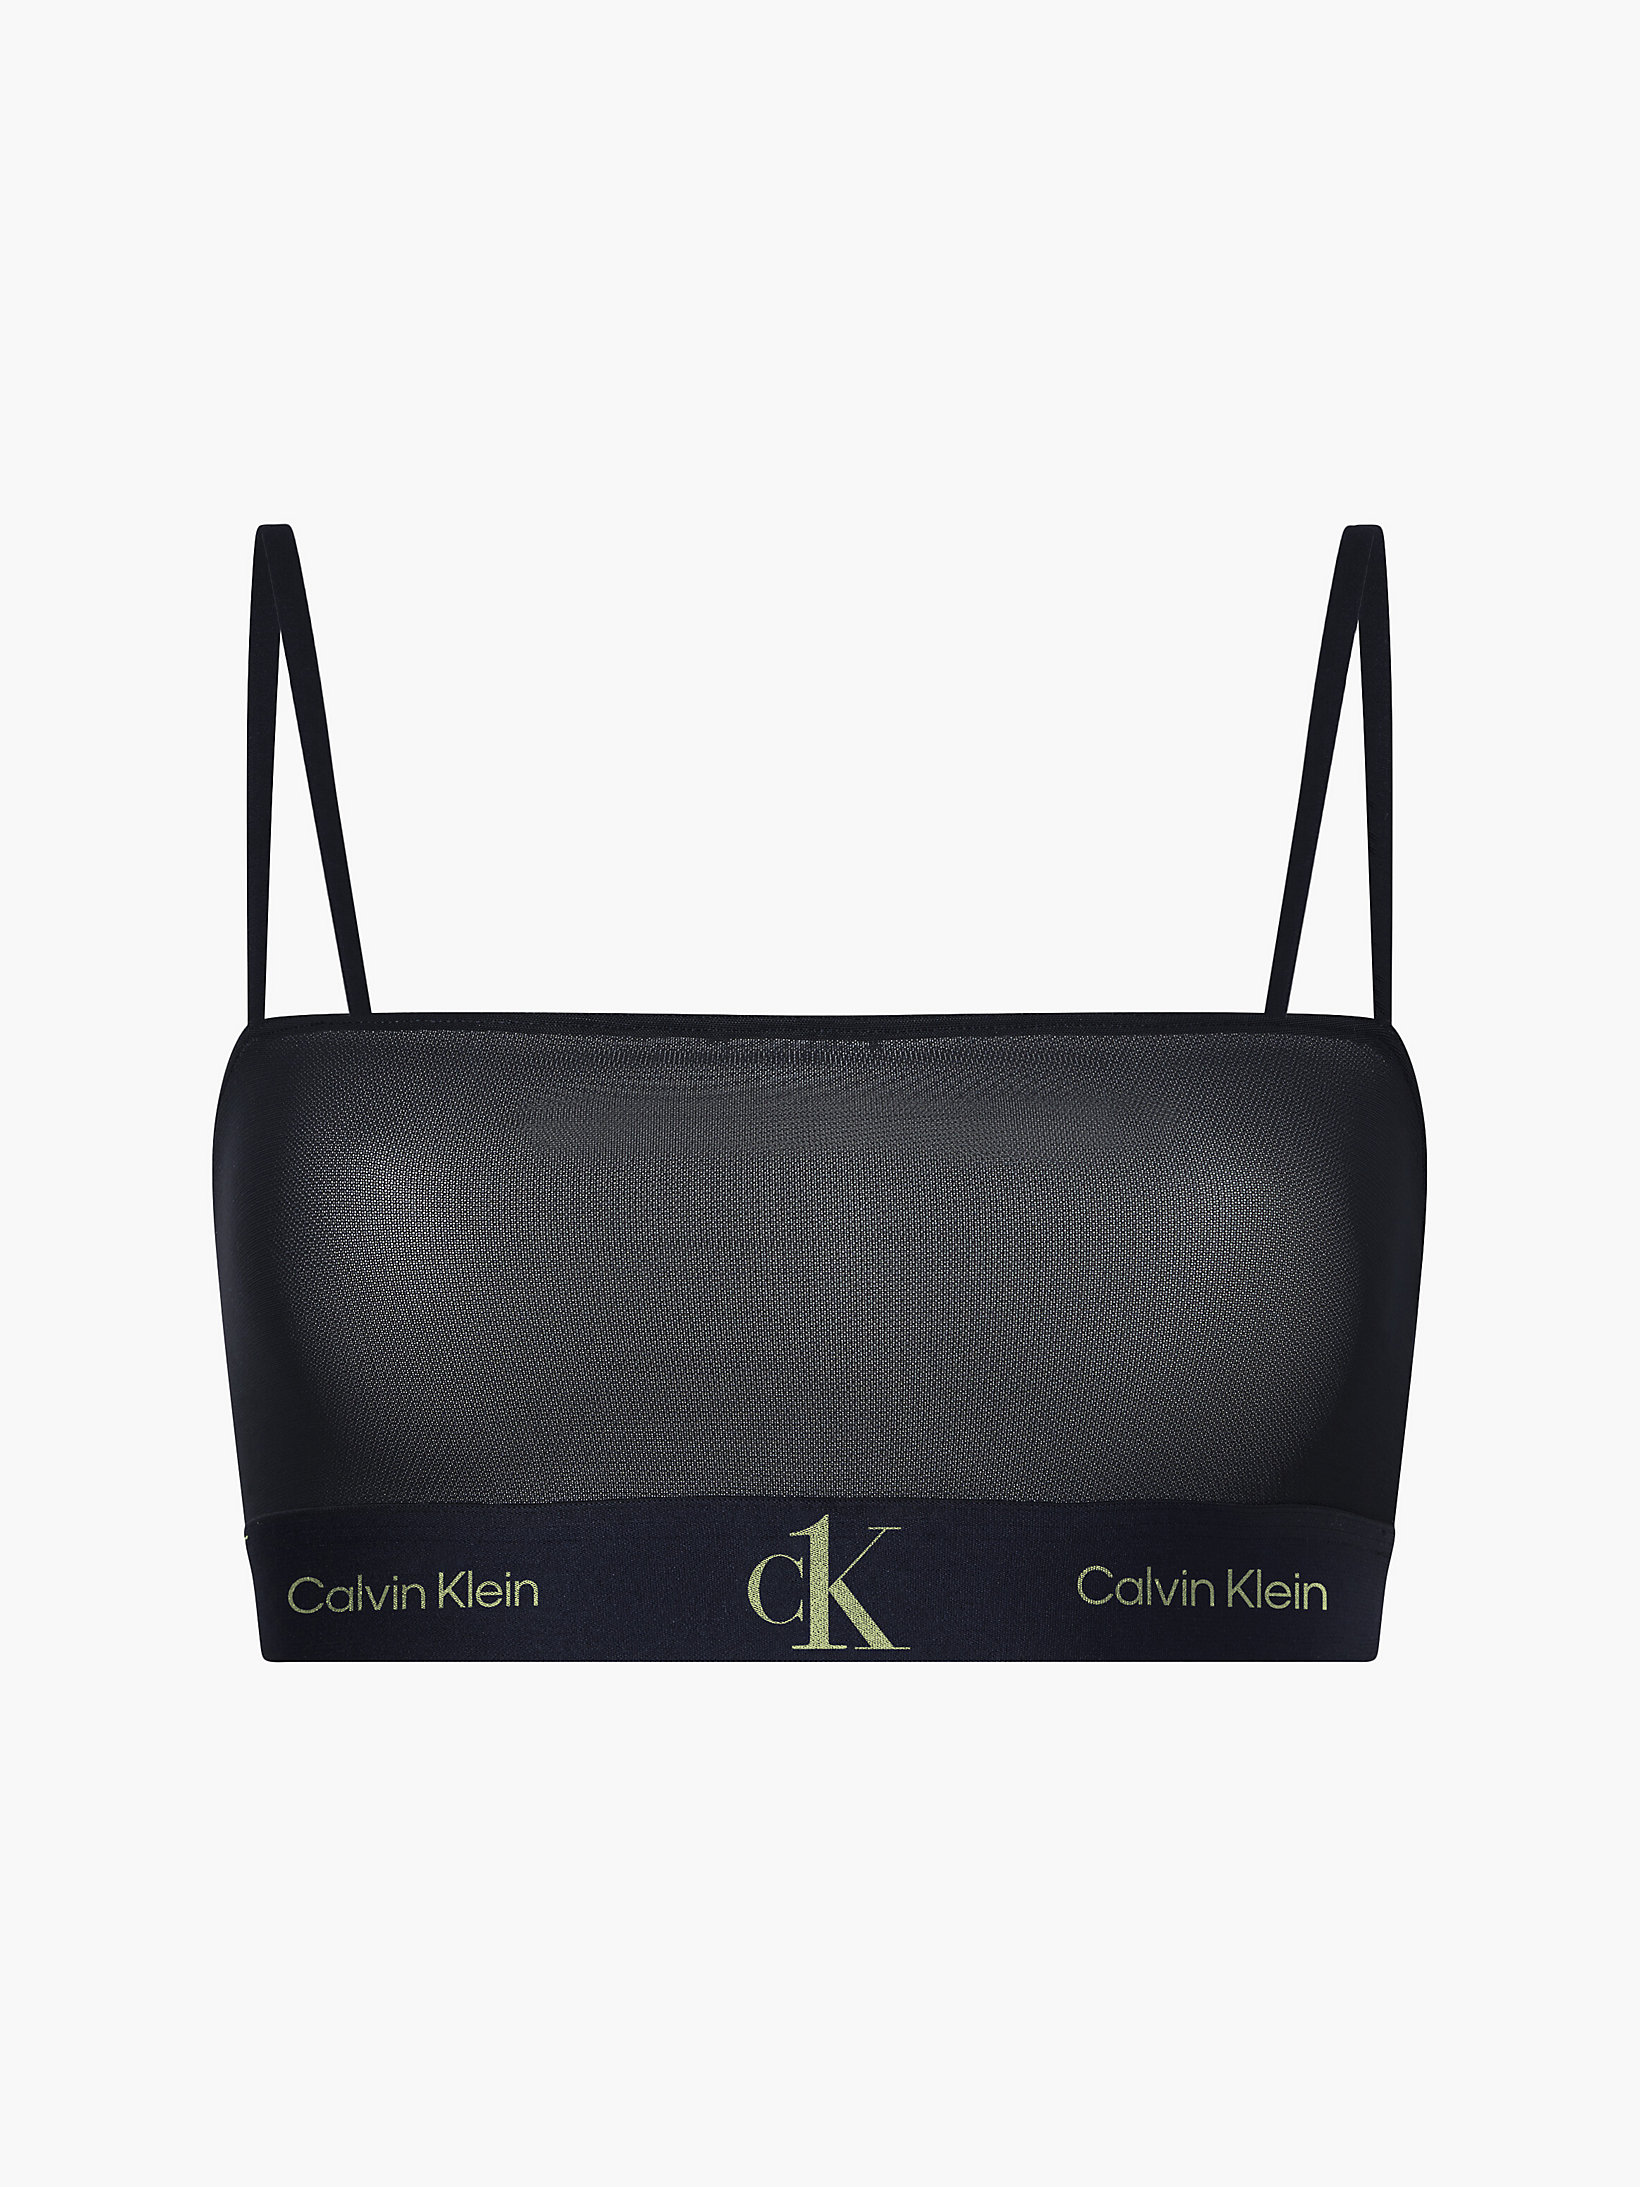 Black > Bandeau-Bralette – CK One > undefined Damen - Calvin Klein